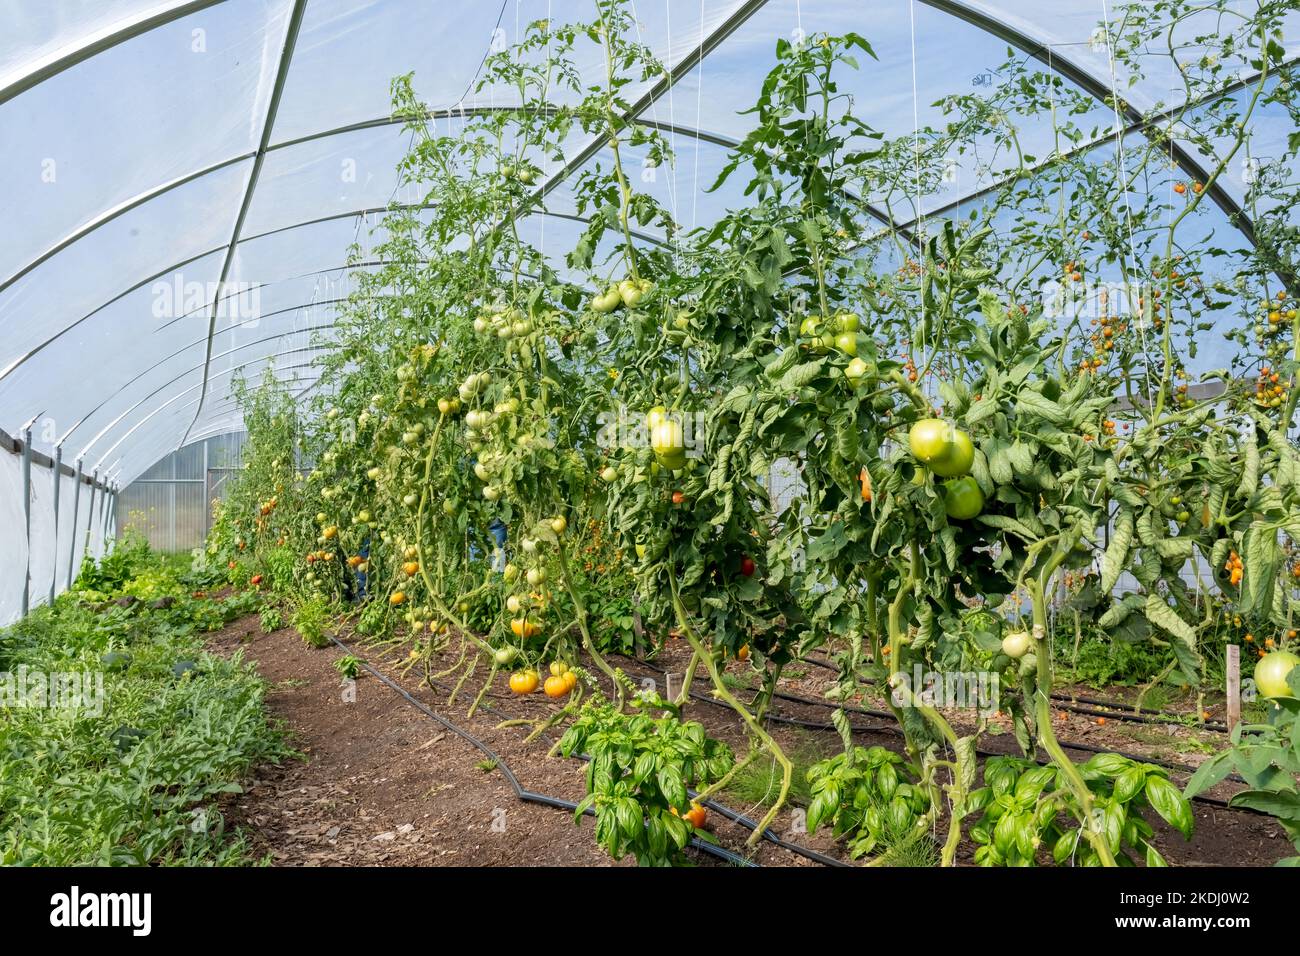 Chimacum, Washington, EE.UU. Tomates, albahaca y otras plantas que crecen en un invernadero comercial. Foto de stock